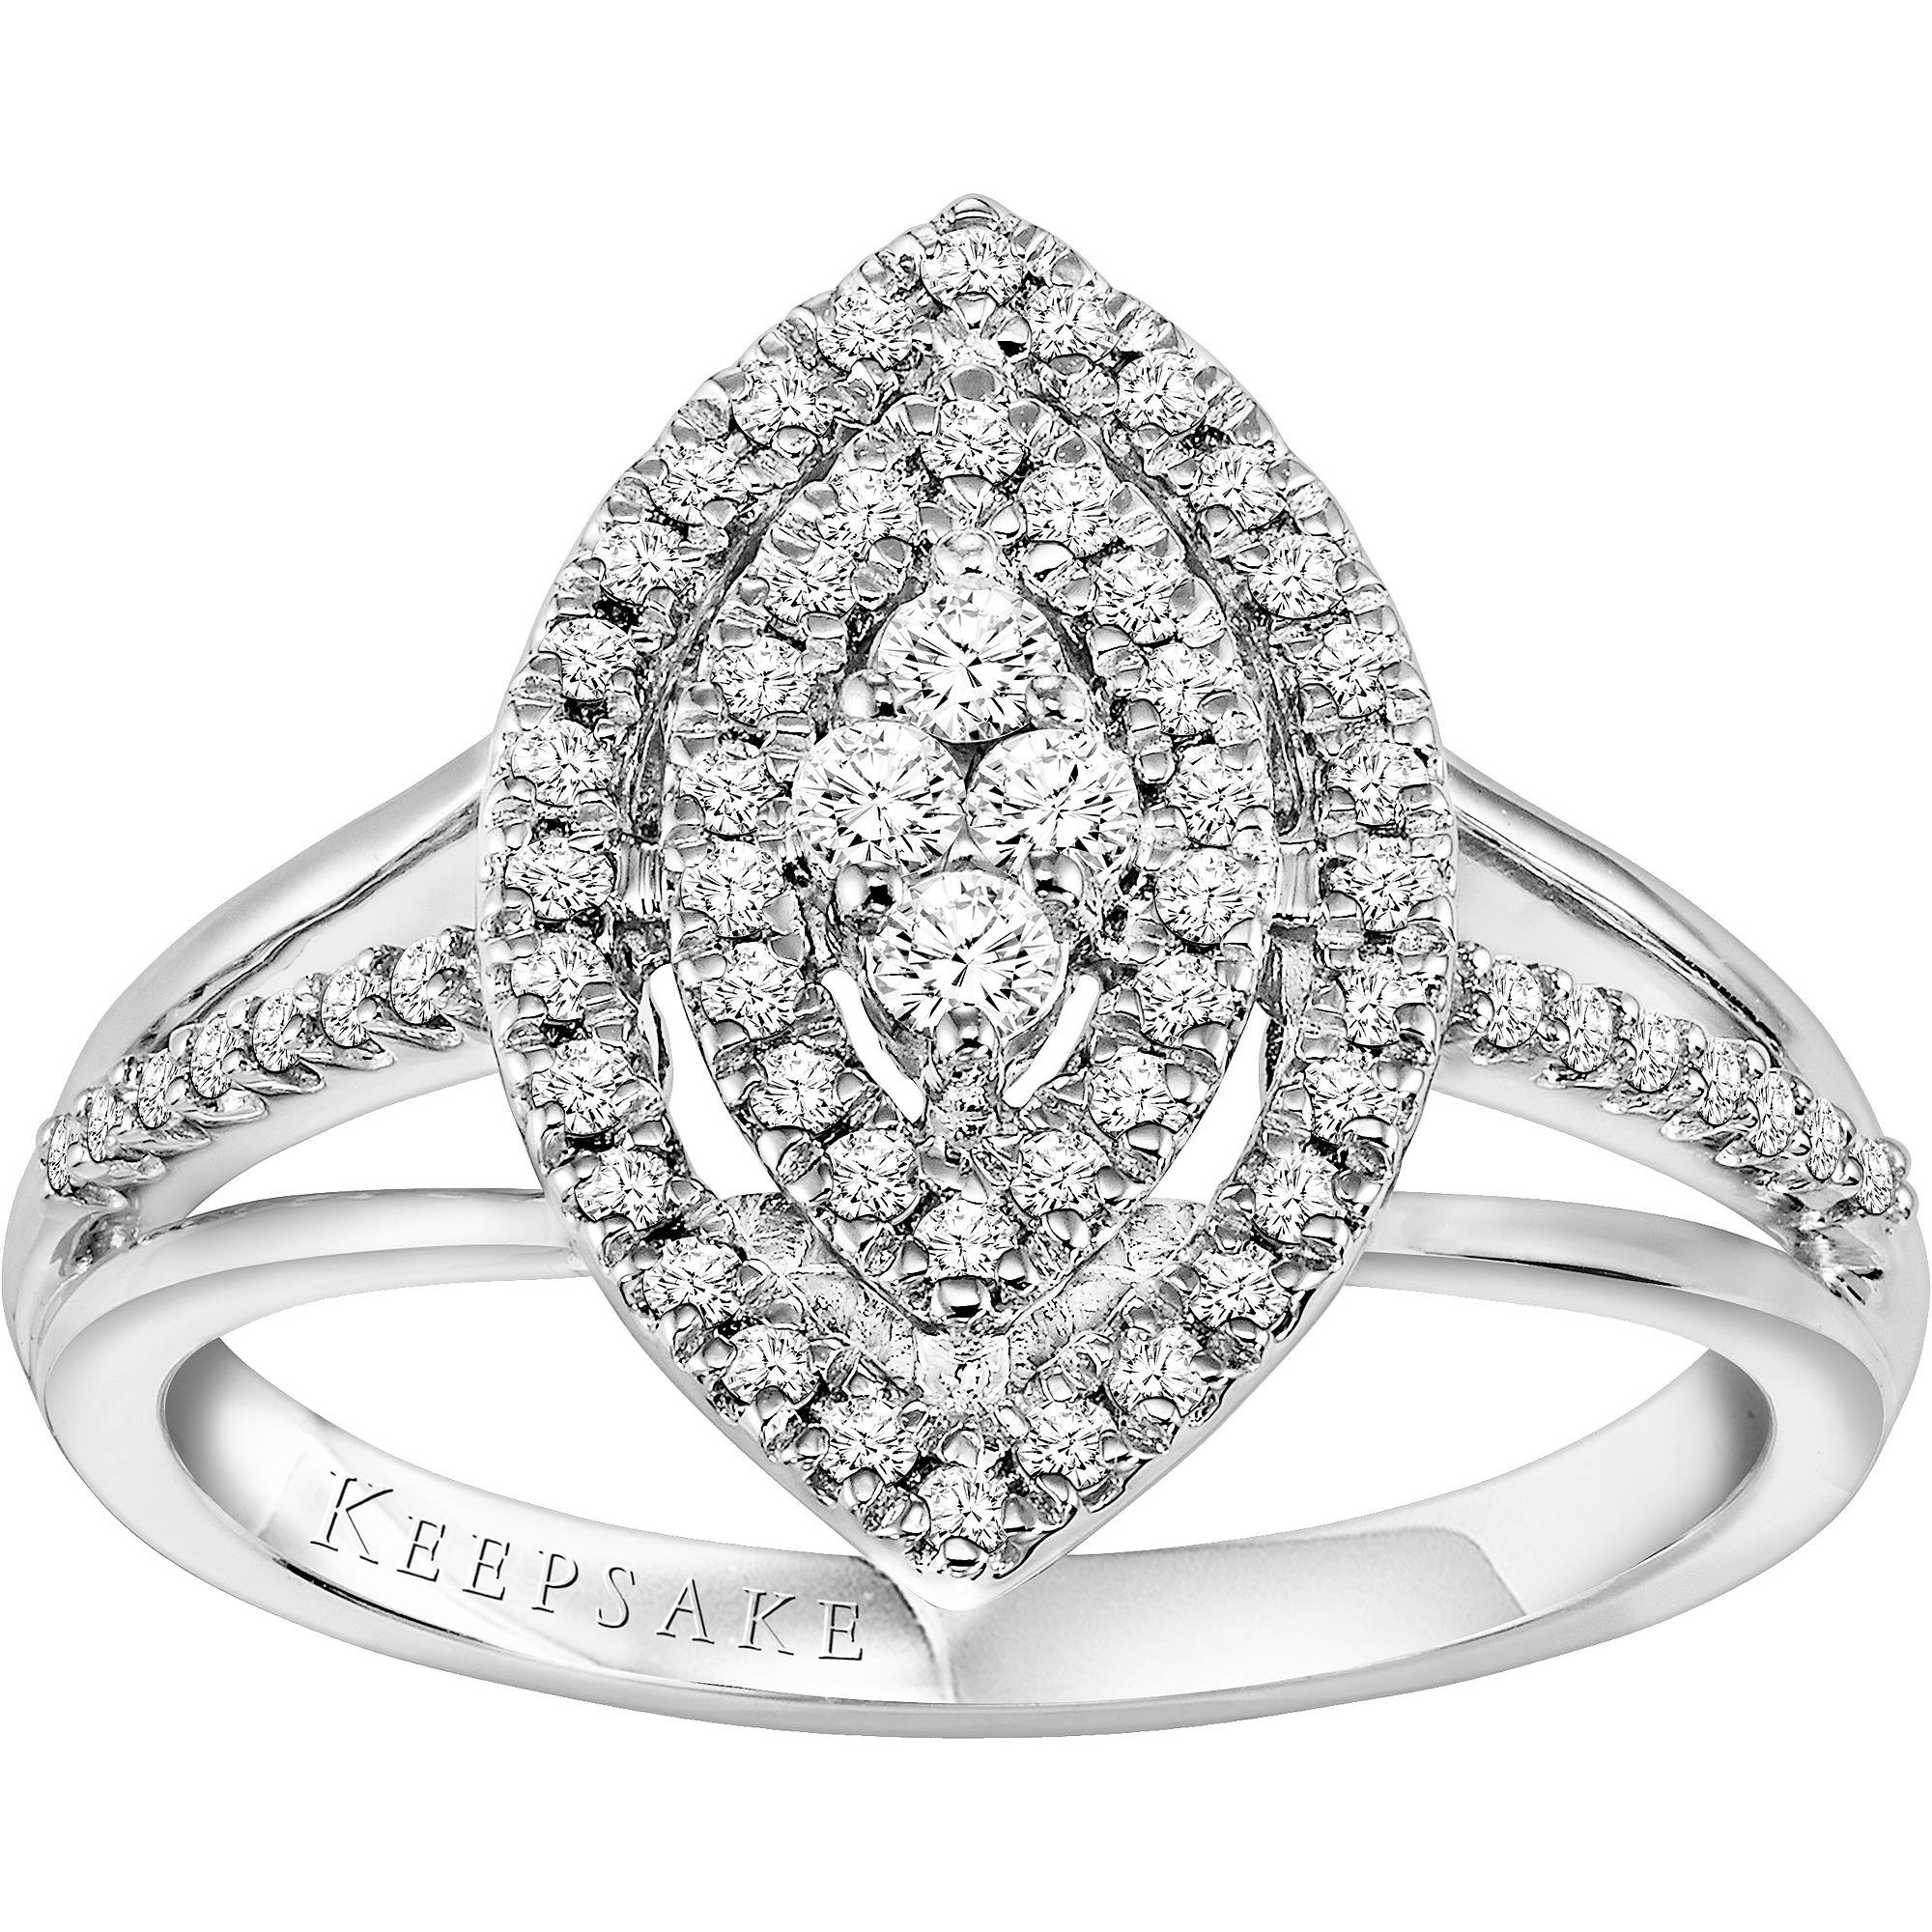 Diamond Rings At Walmart
 15 Best of Walmart Keepsake Engagement Rings